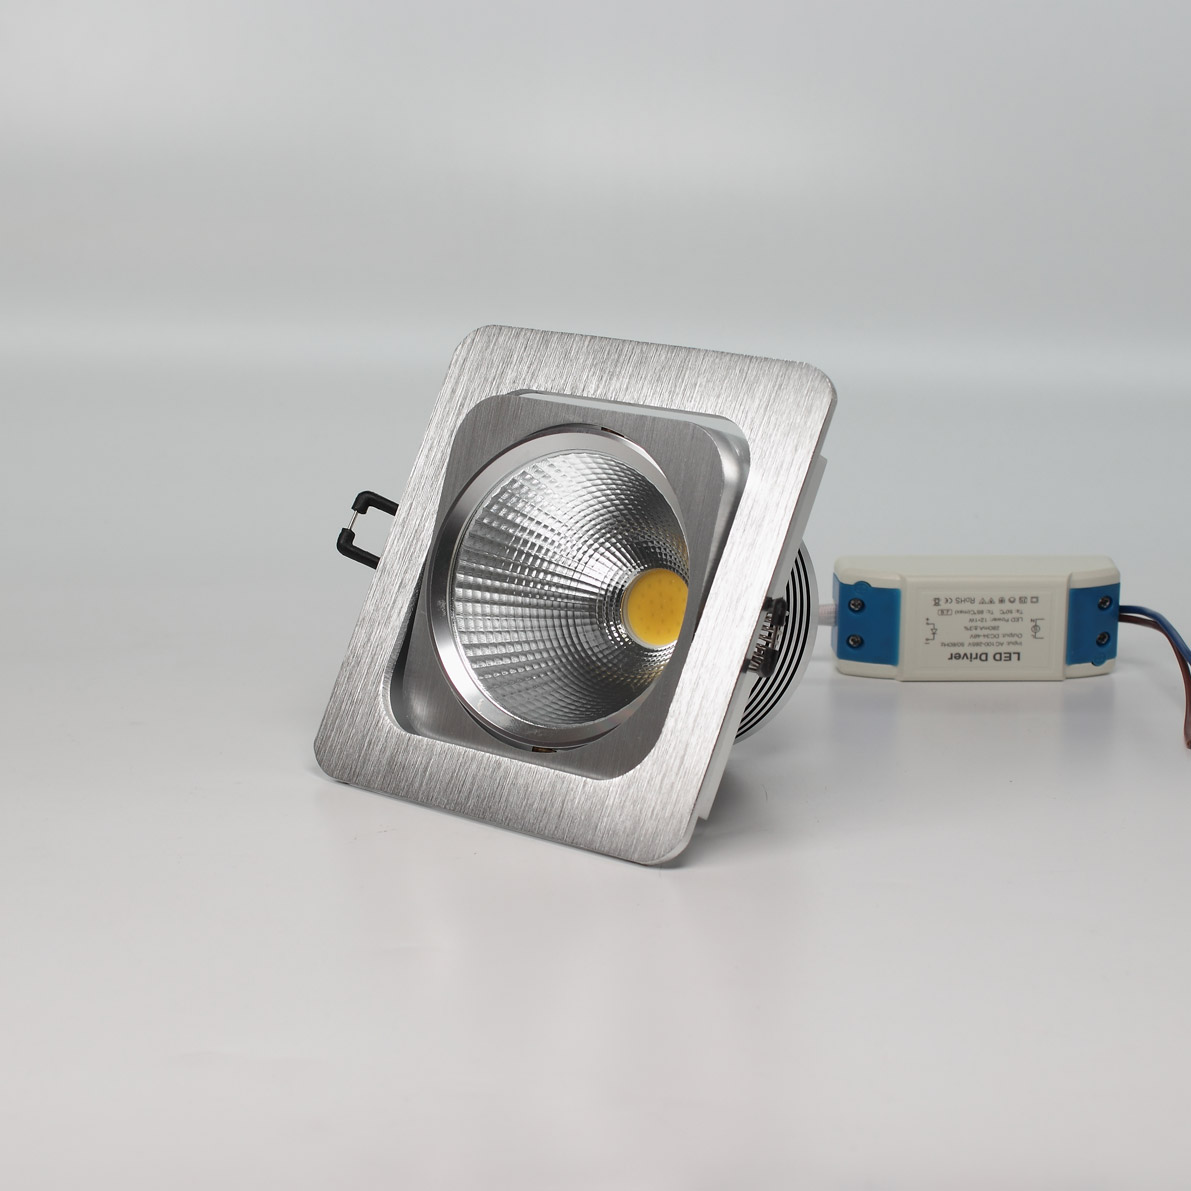 Светодиодные светильники Светодиодный светильник встраиваемый 120.1 series silver housing BW131 (10W,220V,day white)